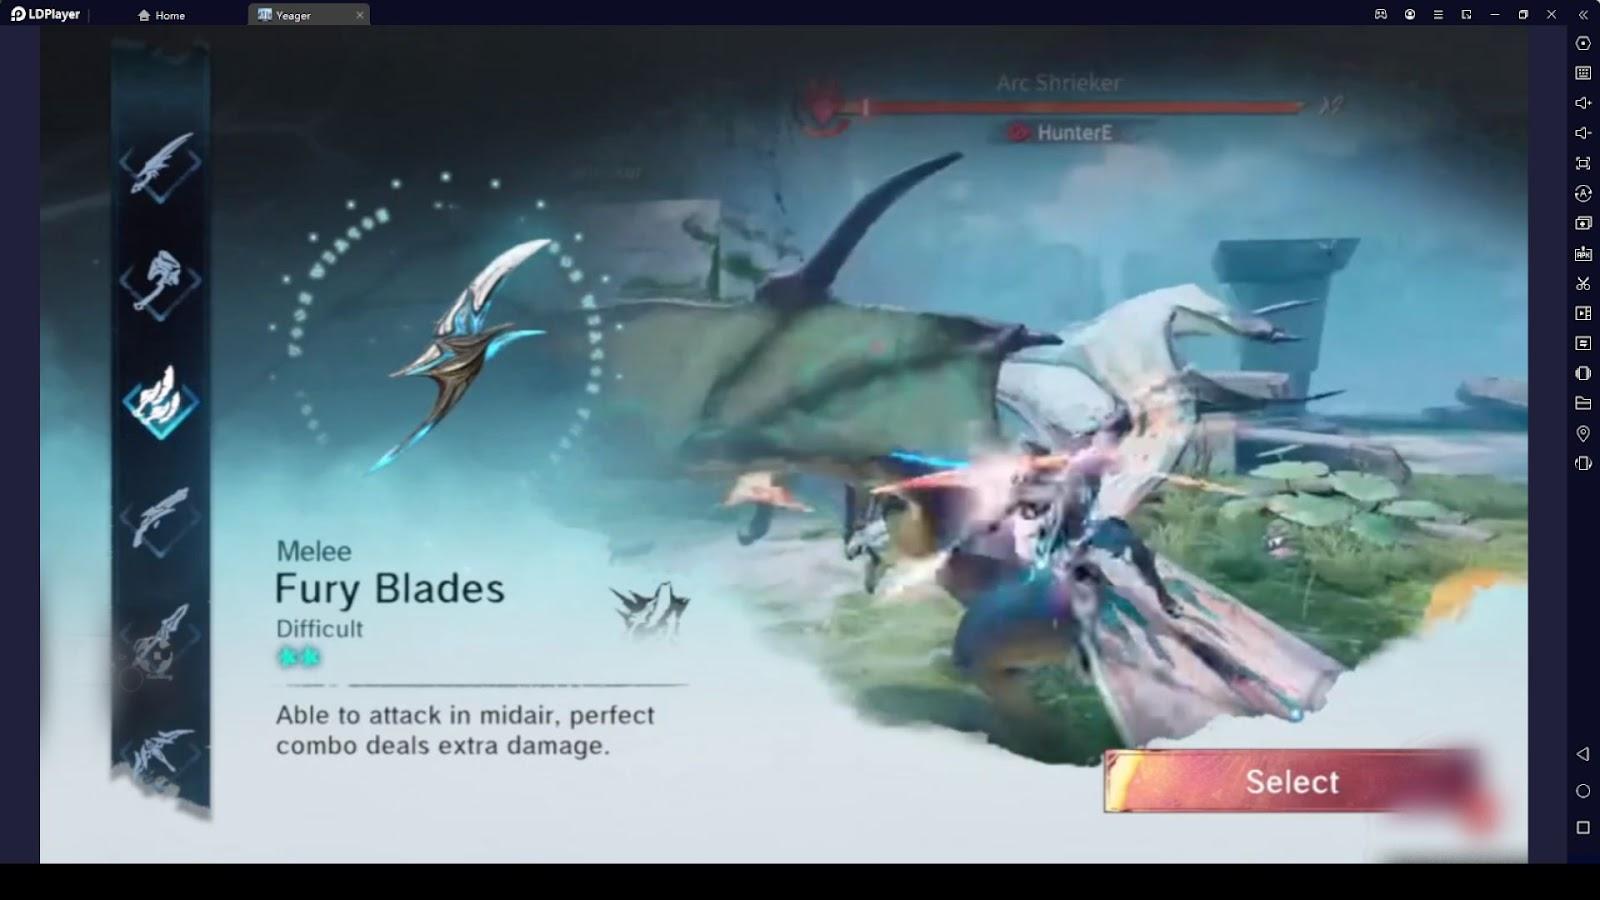 Fury Blades